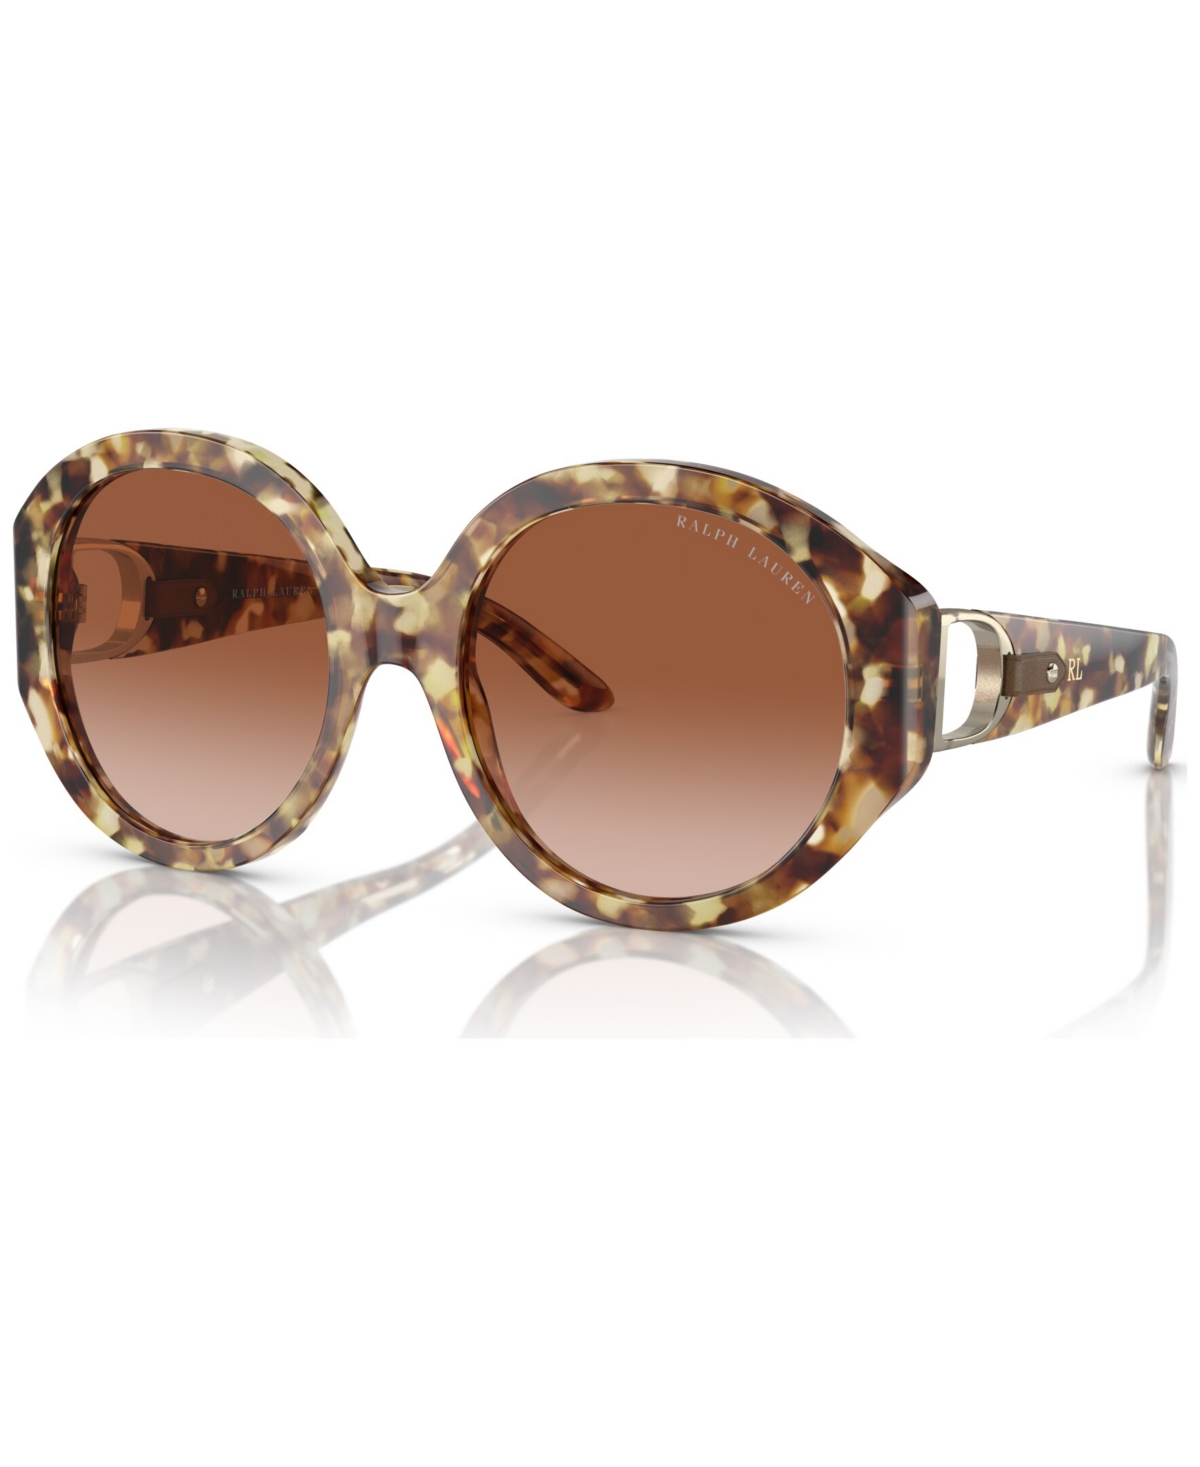 Ralph Lauren Women's Sunglasses, Rl8188q In Gradient Brown